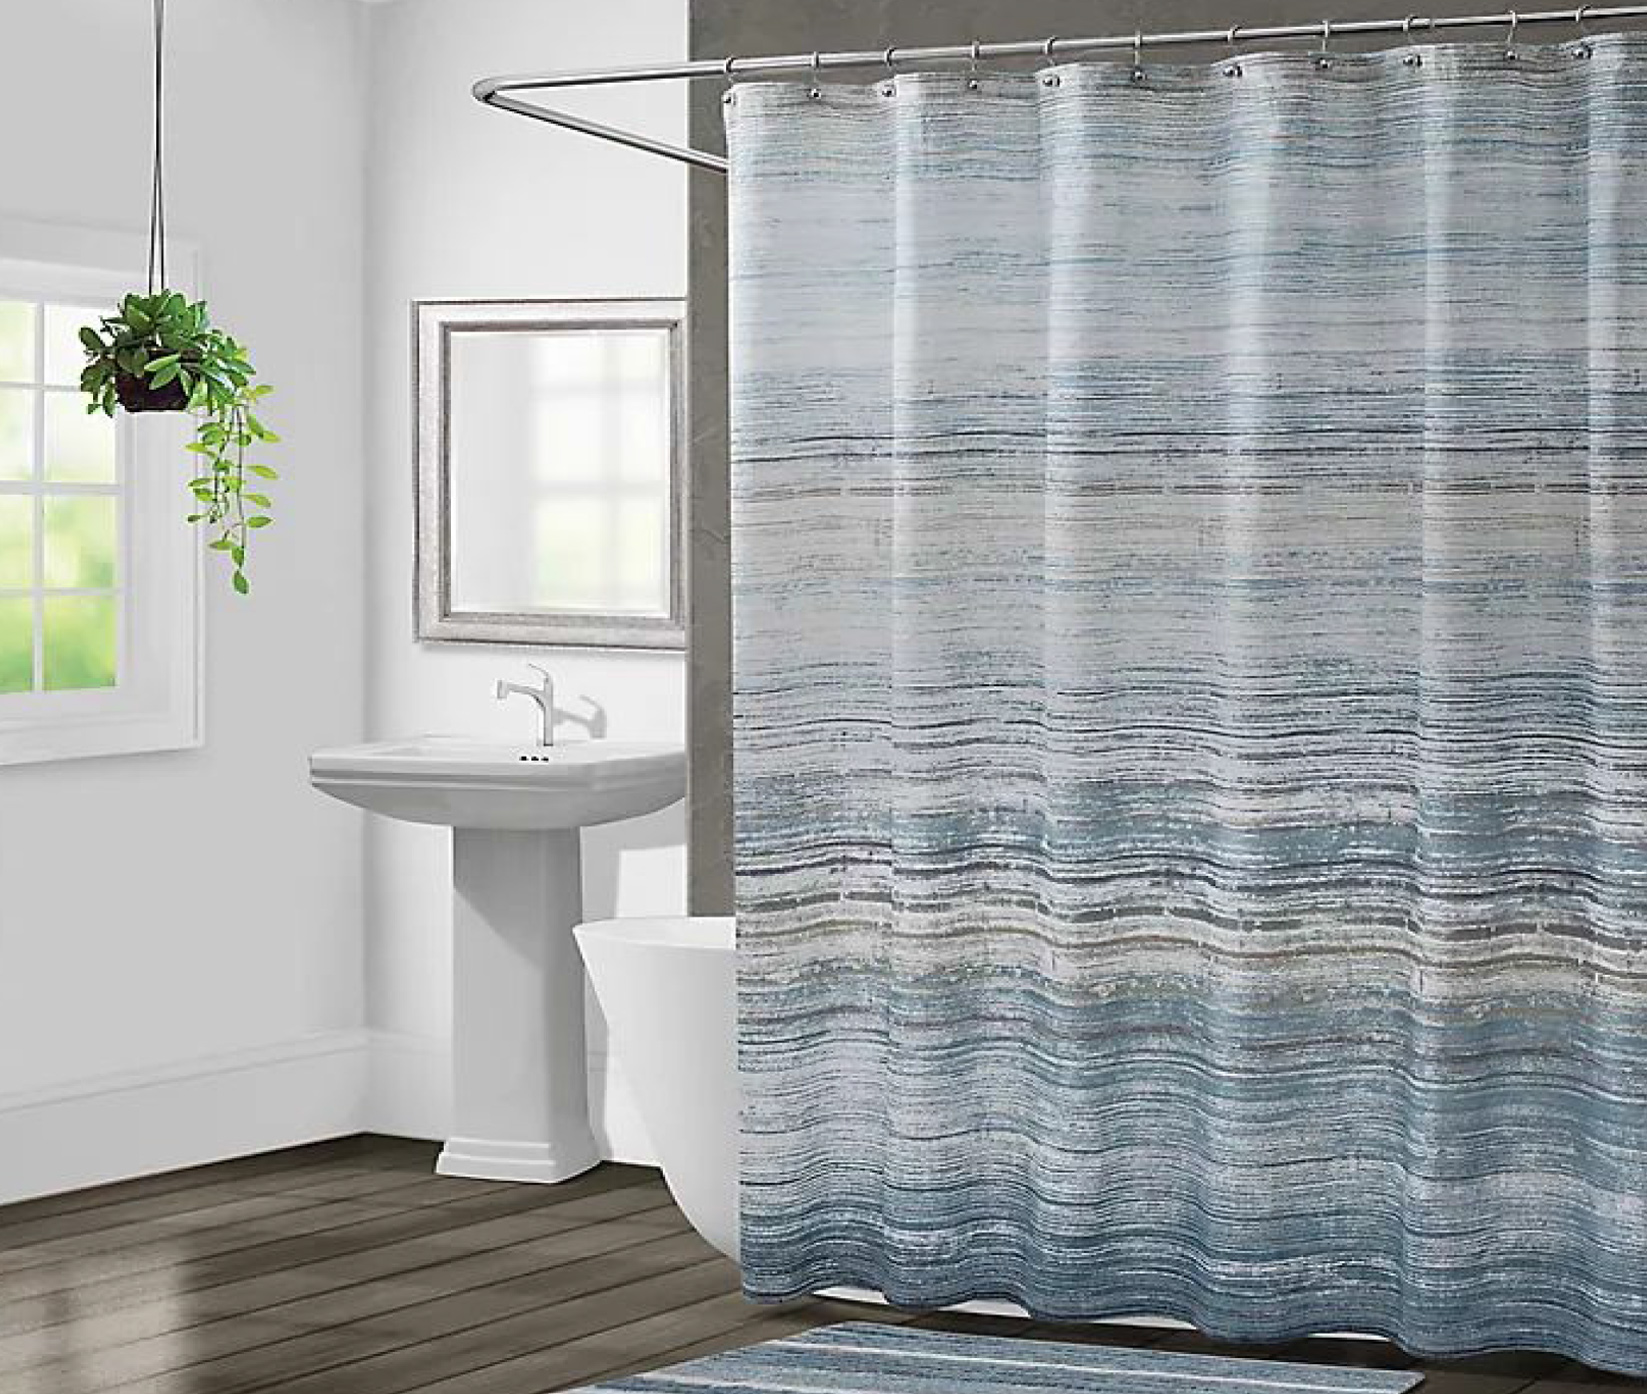 Bathroom curtains